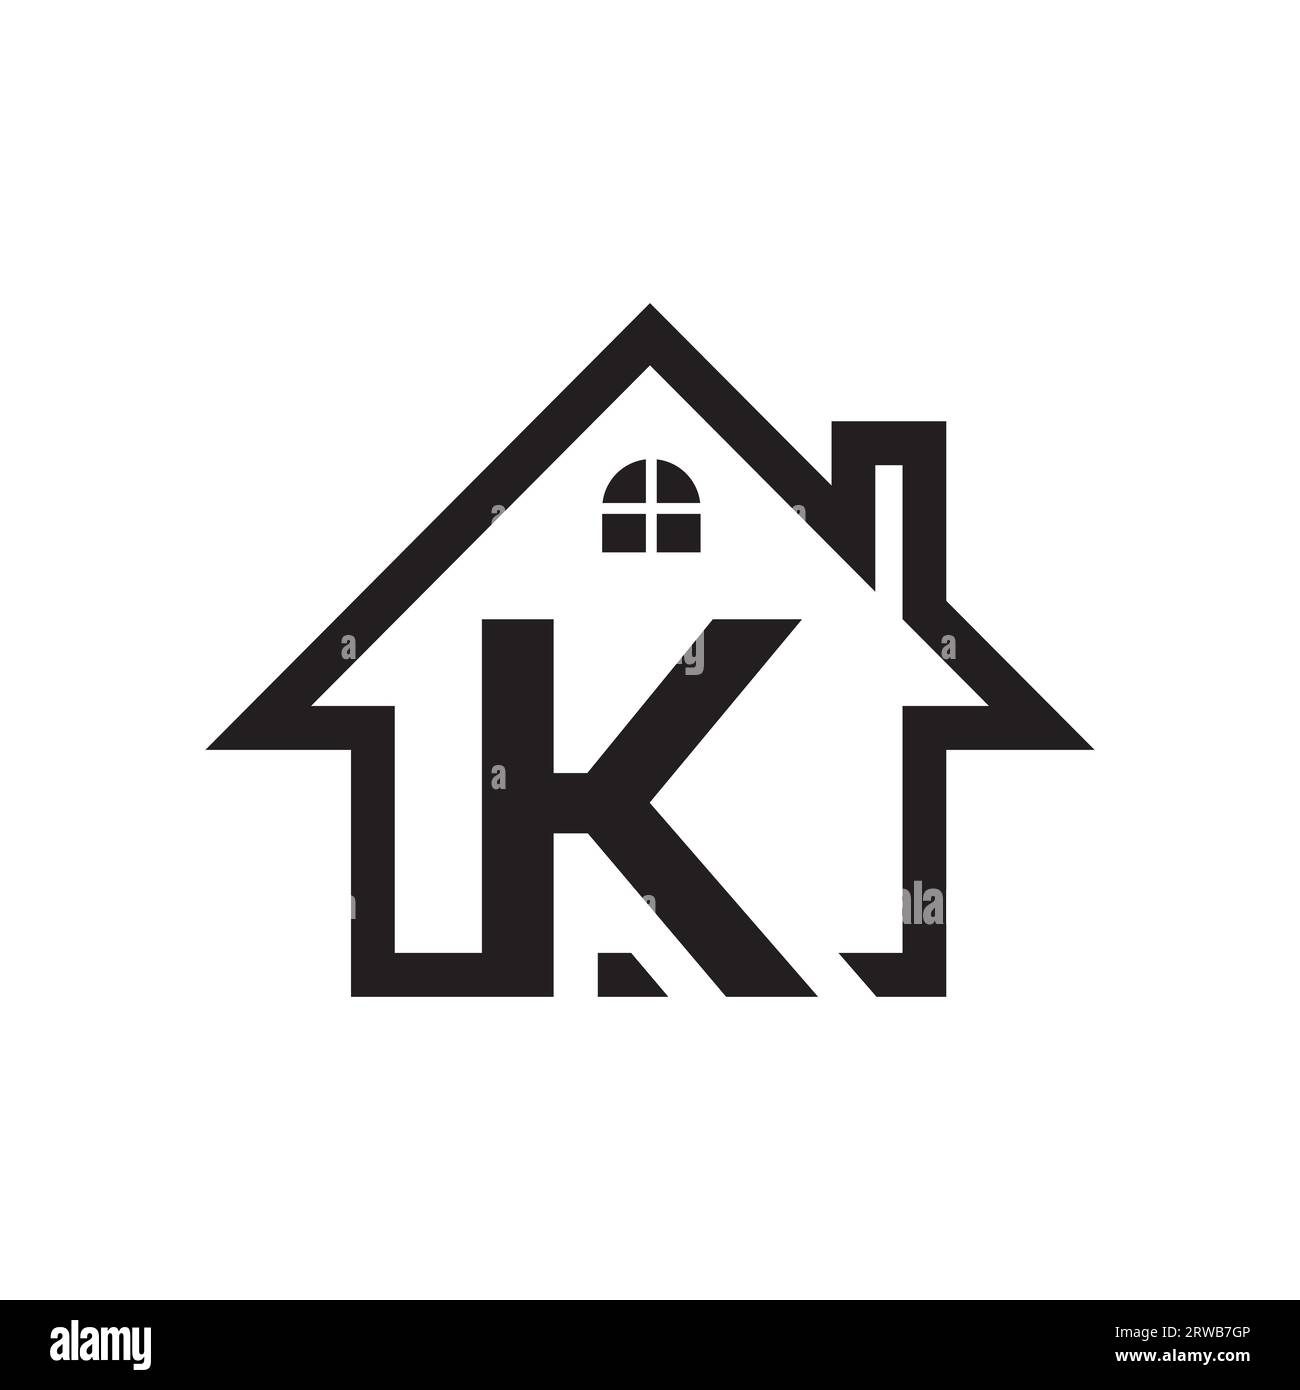 K real estate logo design. Real estate company logo design. Construction and real-estate company logo vector Stock Vector